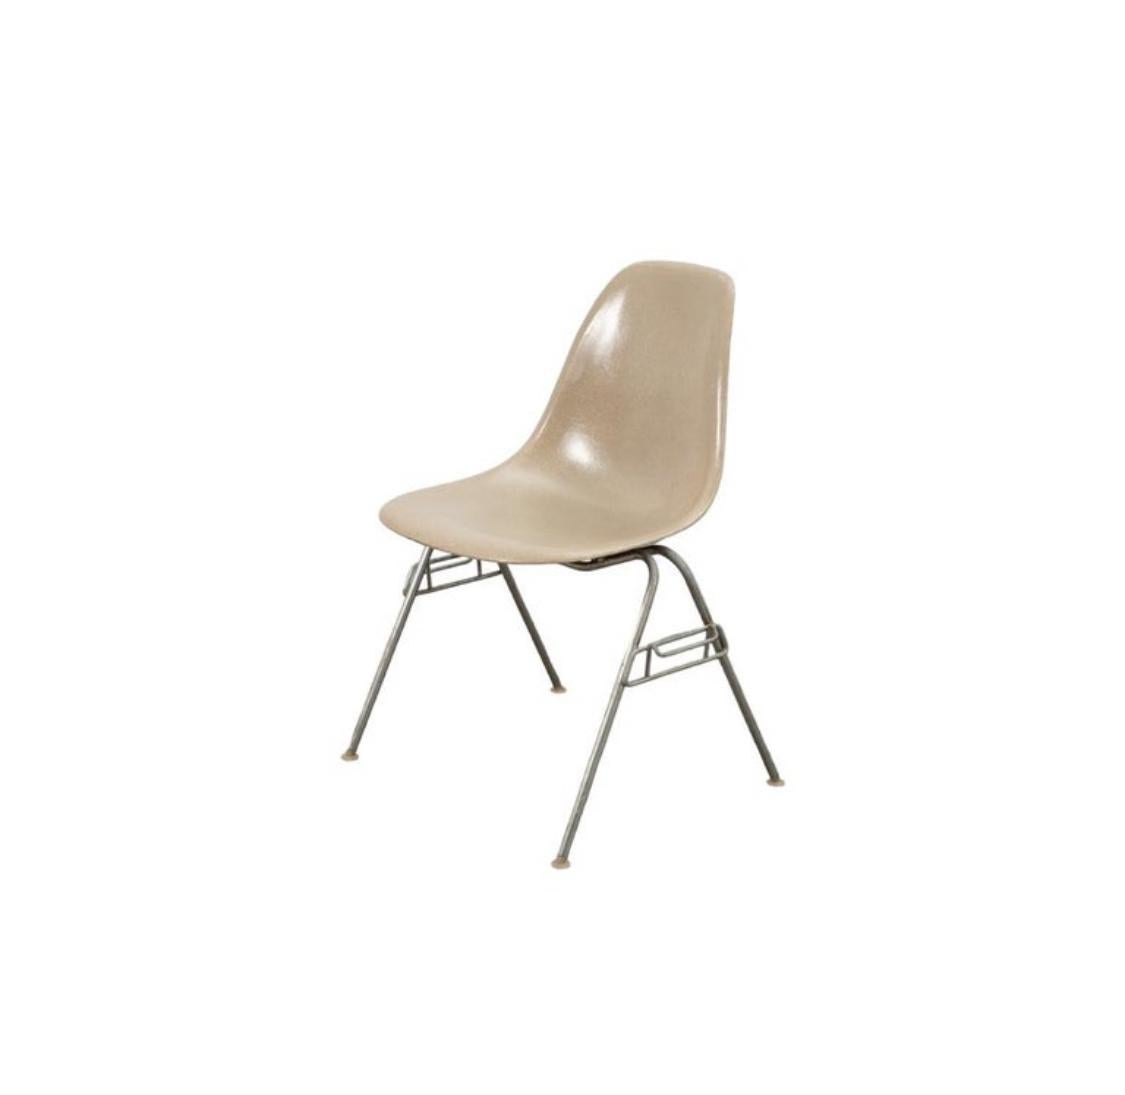 Ensemble de 4 chaises de salle à manger Herman Miller Eames en fibre de verre. Signé et garanti authentique. Bases empilables en acier avec pieds autonivelants en nylon. En bon état.